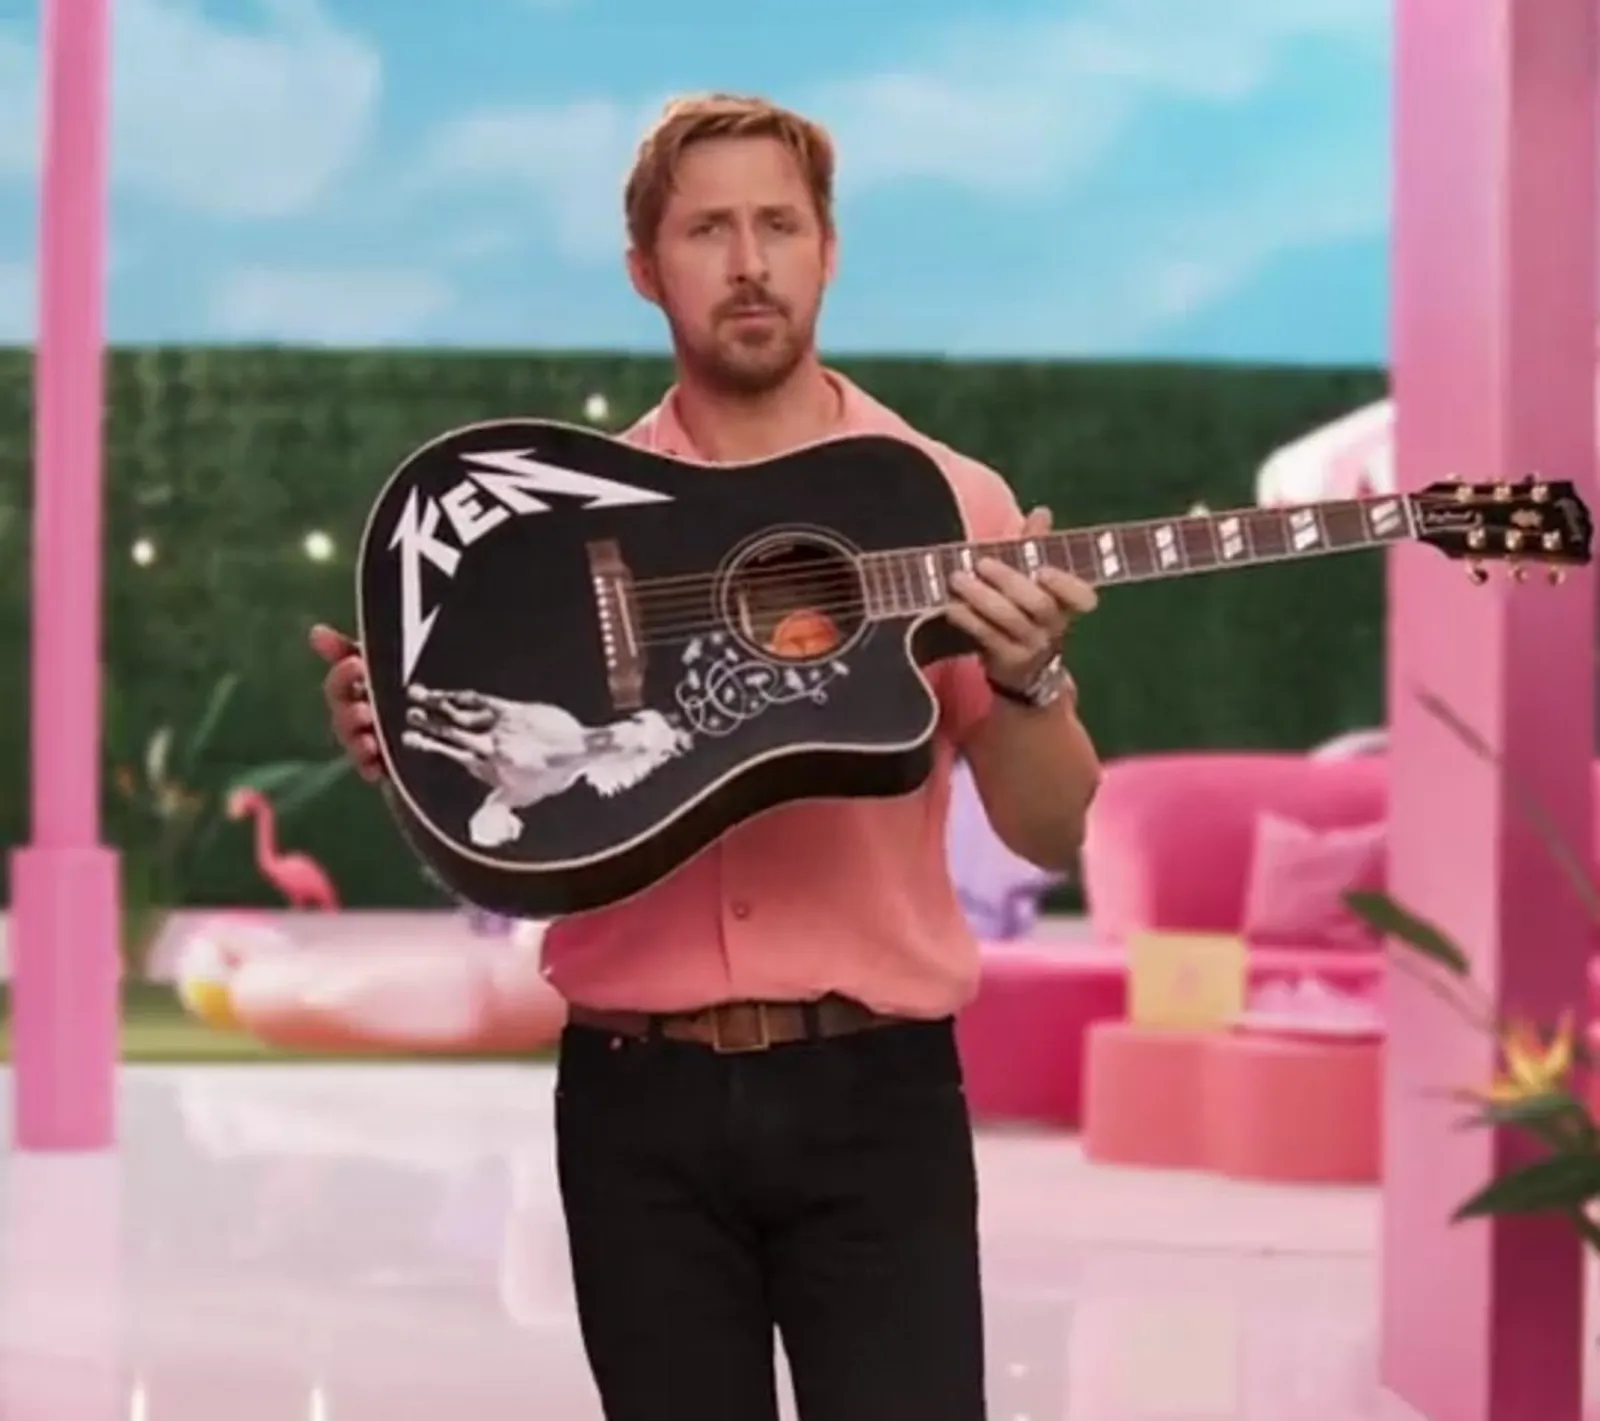 Gara-Gara Kostum Mirip, Ryan Gosling Beri Hadiah Gitar ke Jimin BTS